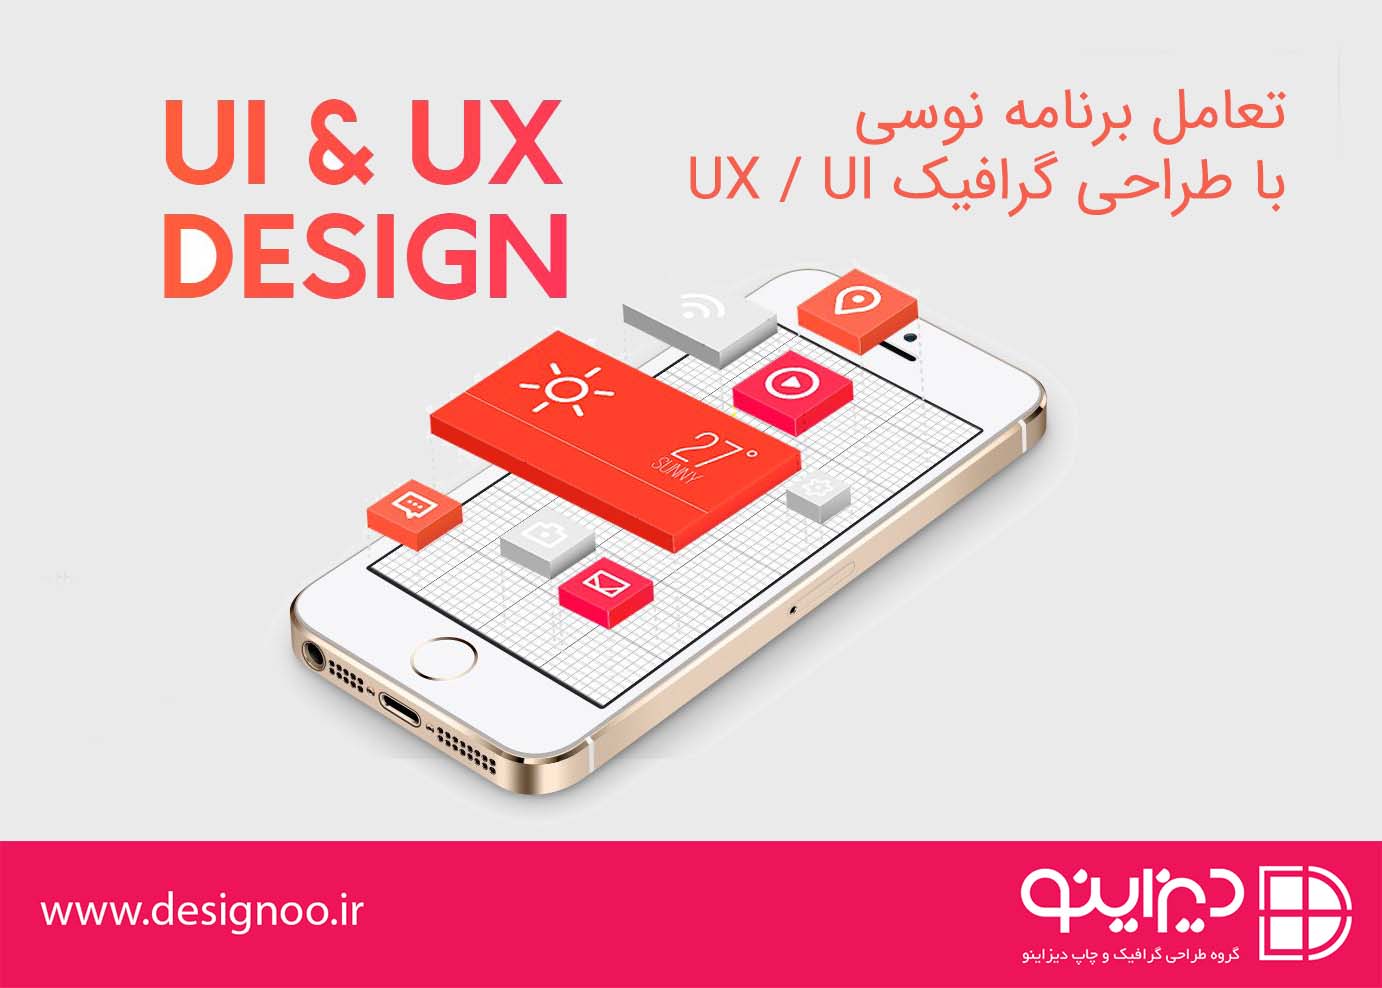 تعامل برنامه نوسی با طراحی گرافیک UX - UI